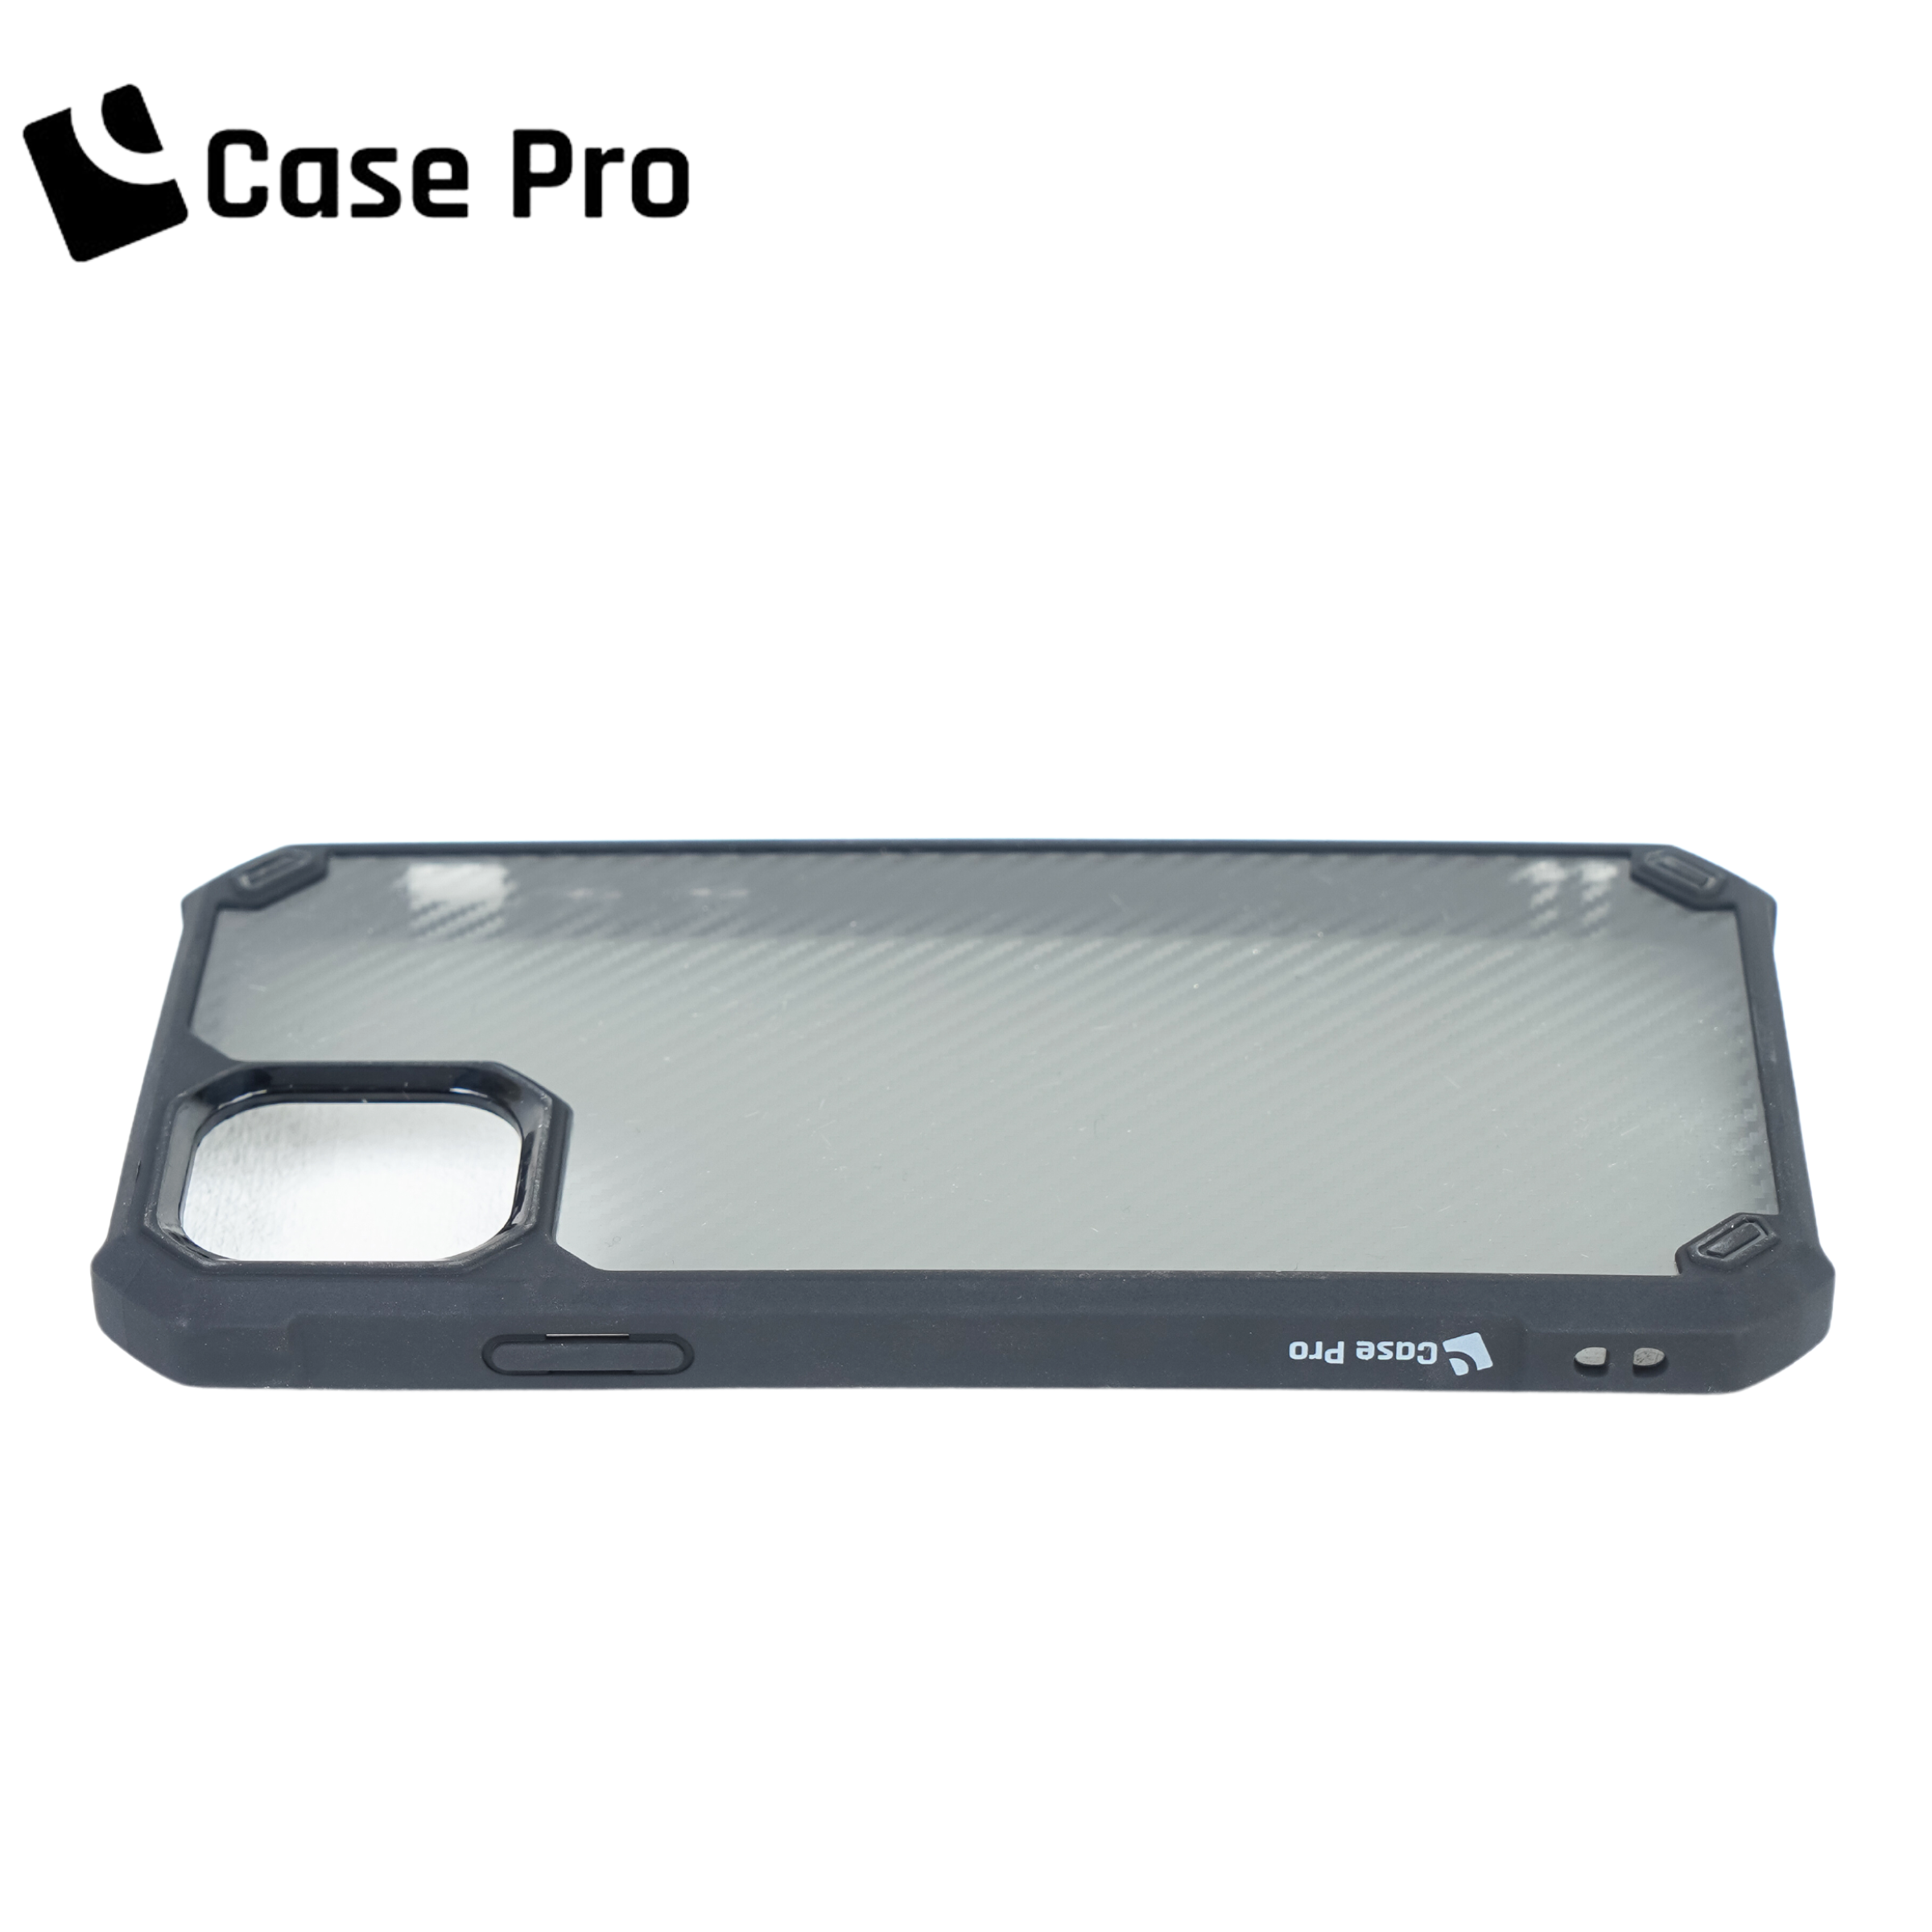 CASE PRO iPhone 11 Pro Case (Element)